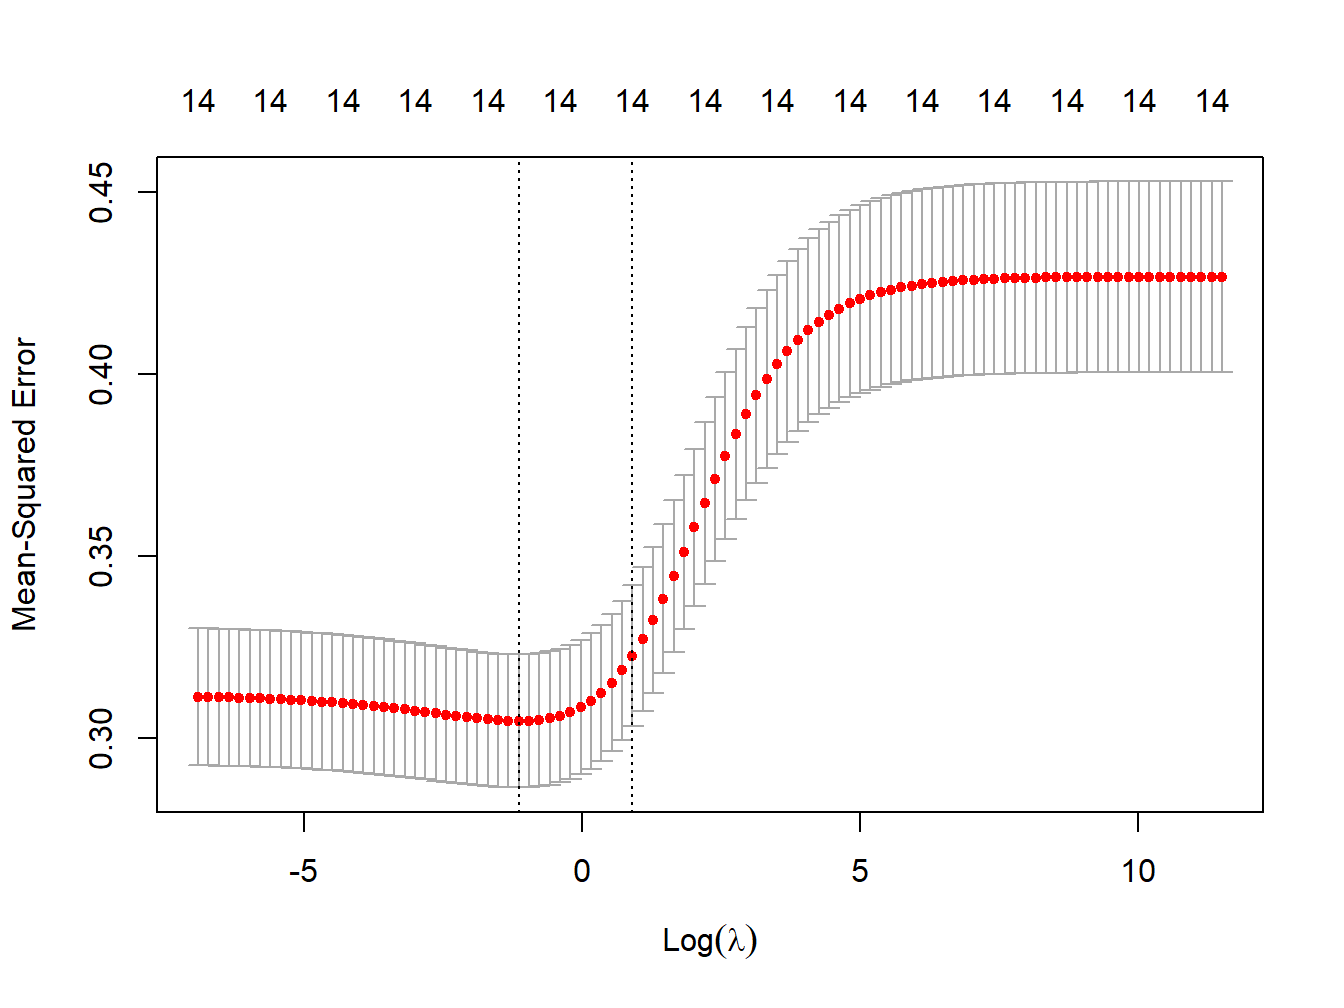 MSE vs lambda for ridge regression in simulated data